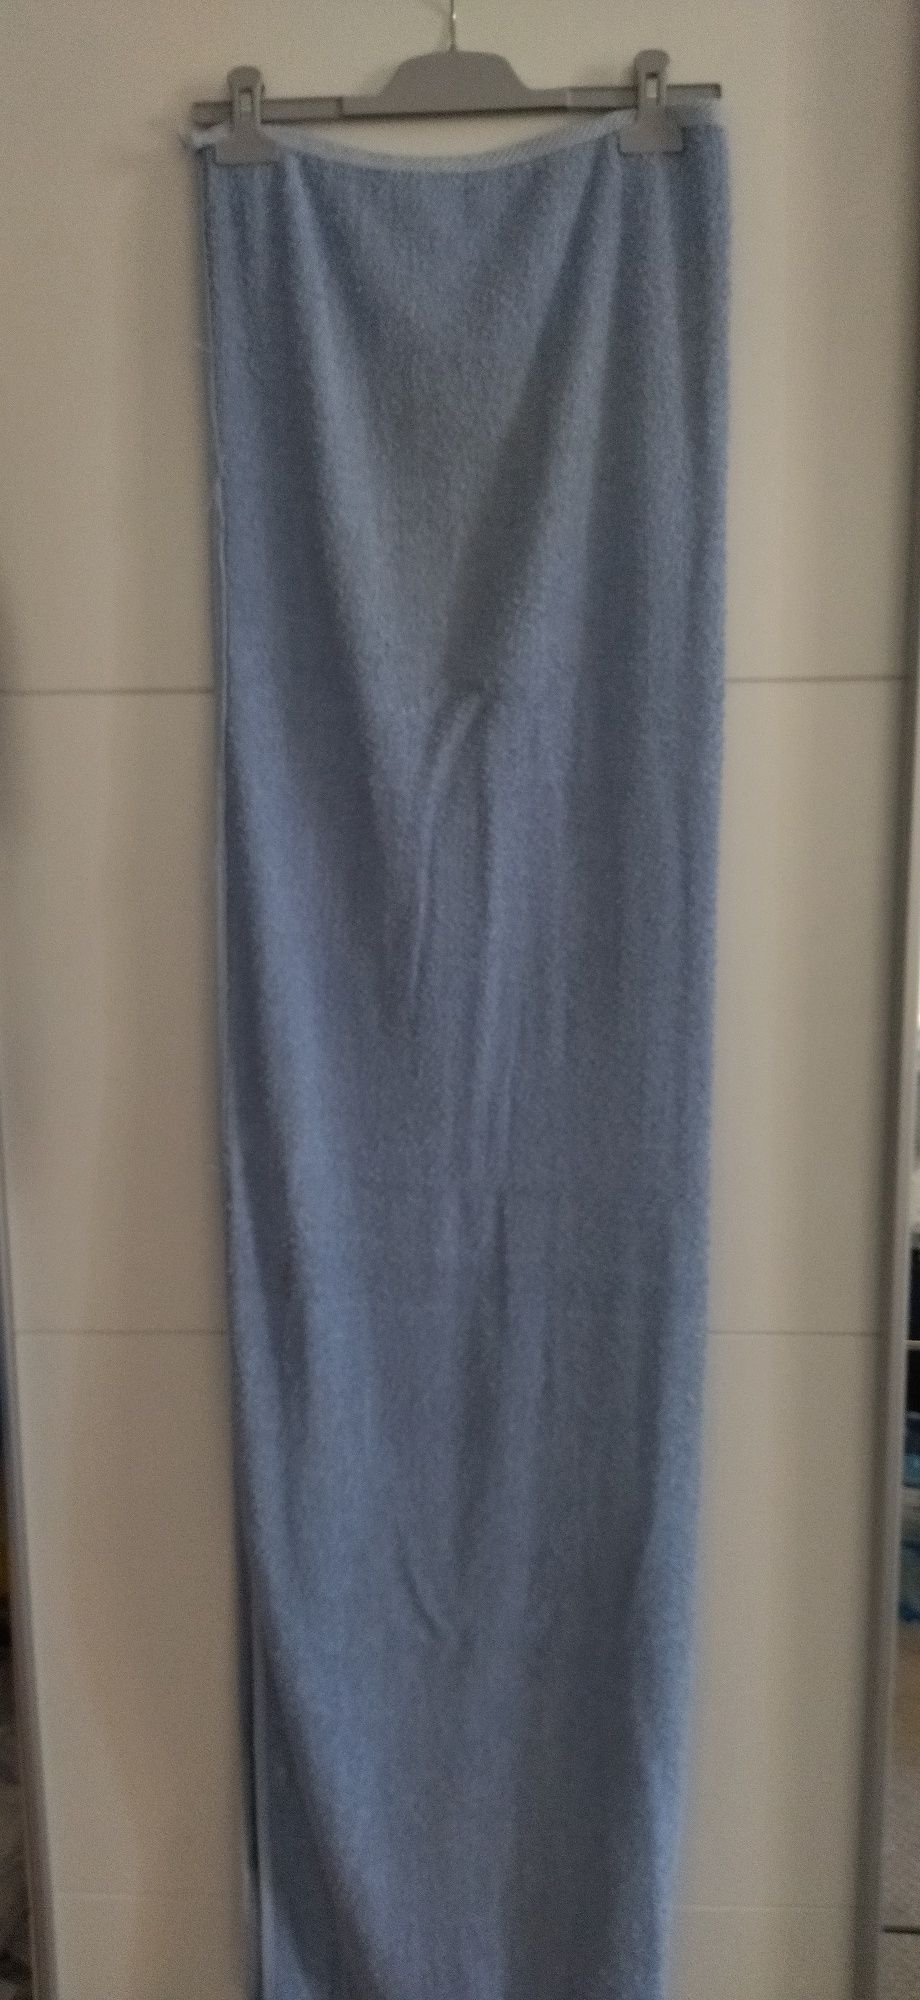 Ręczniki kąpielowe duże 147 cm na 67 cm